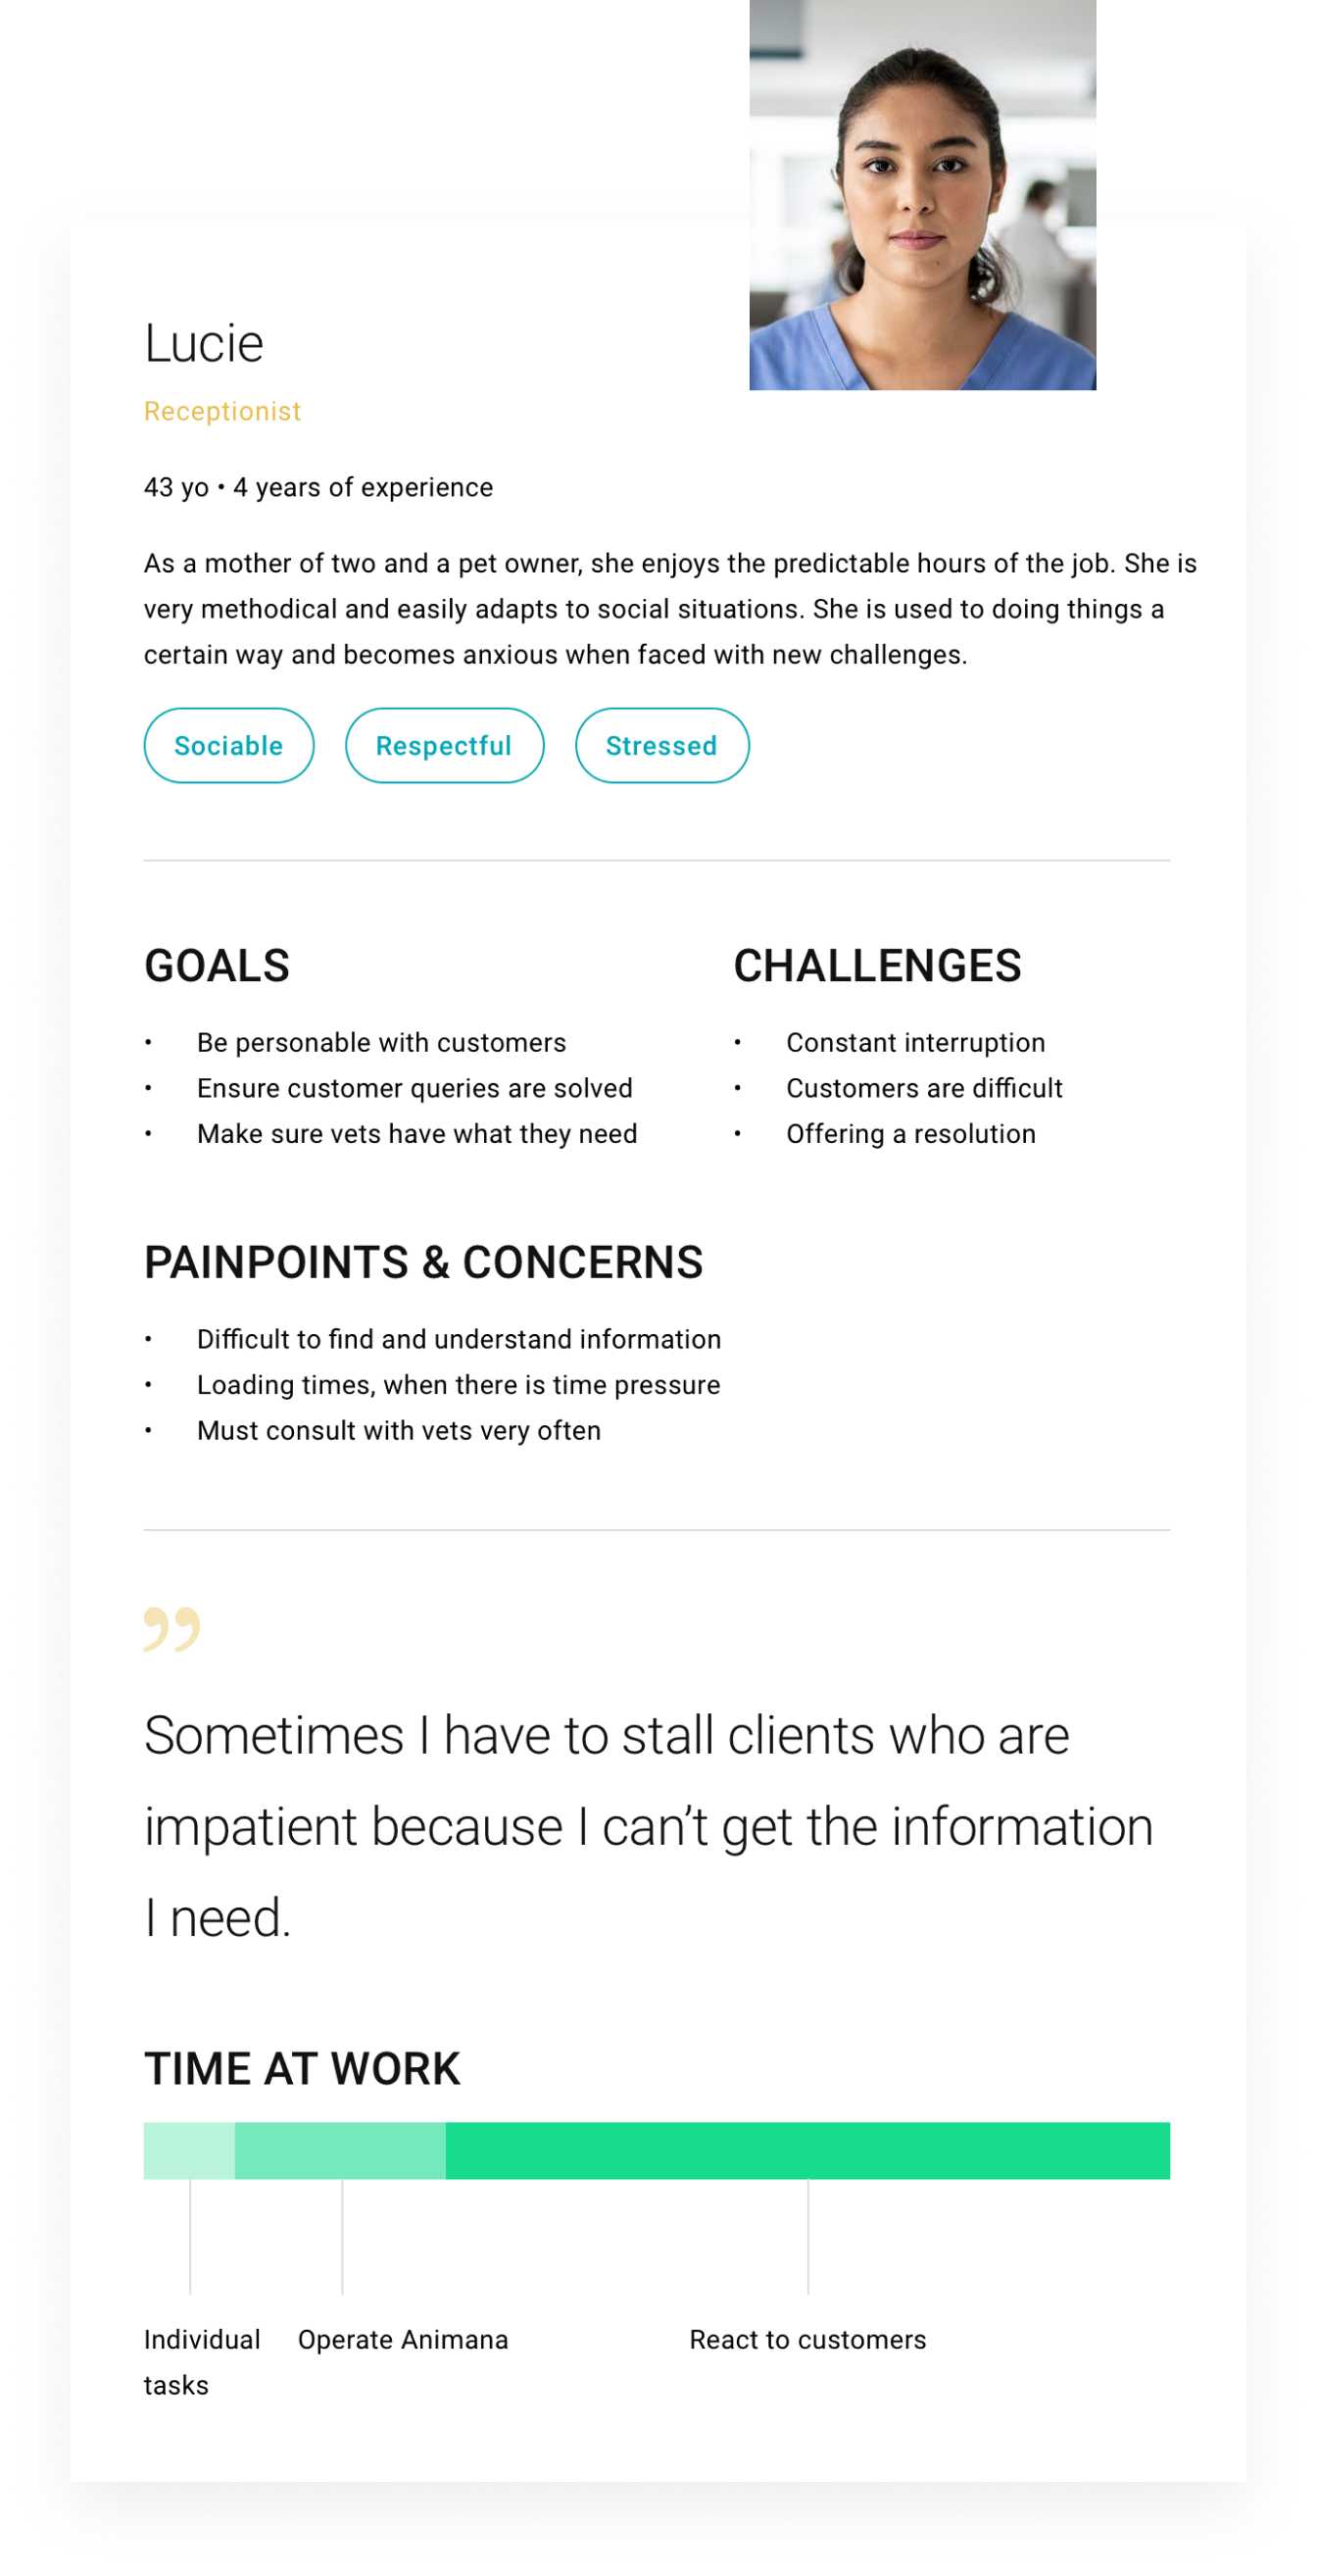 Diagramma della persona dell'utente con obiettivi, sfide e preoccupazioni